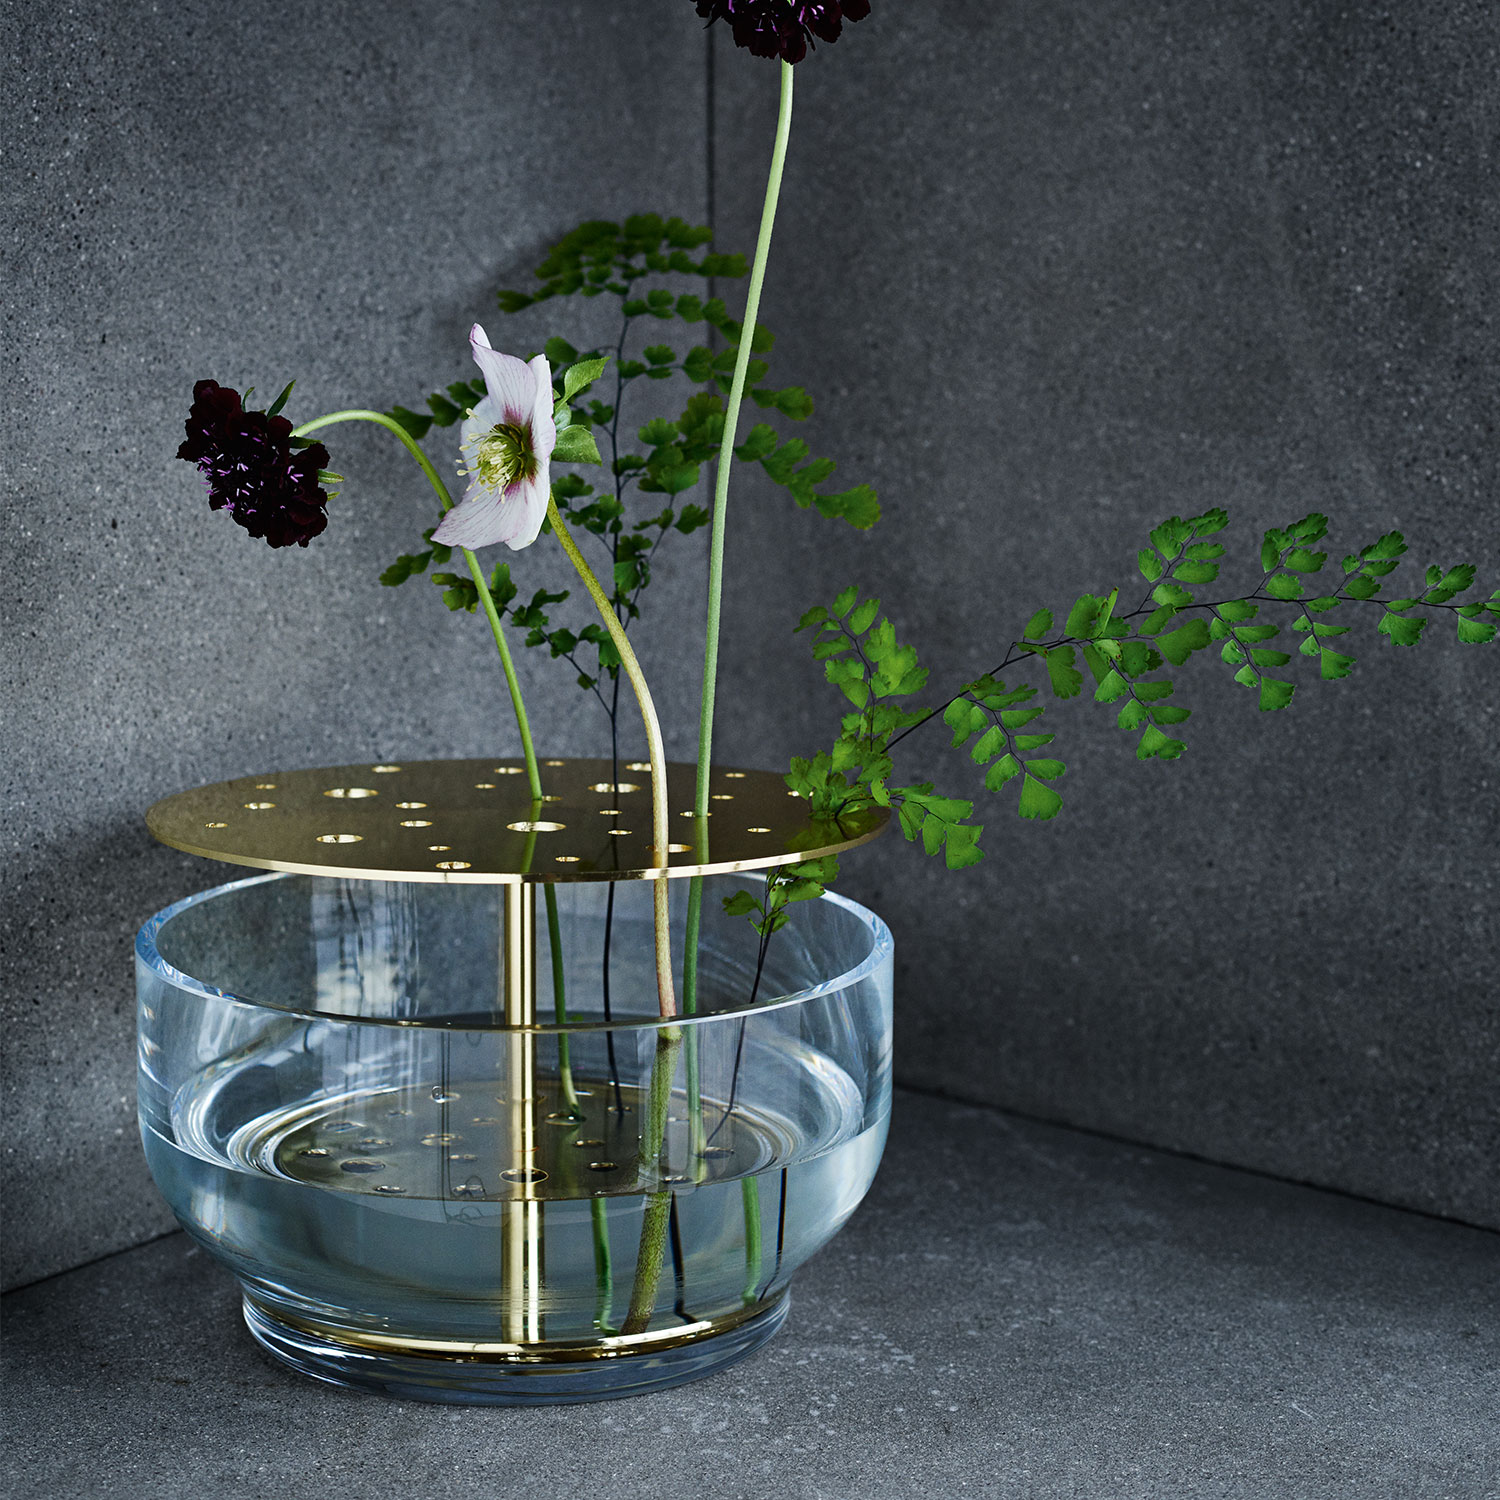 Có thể nói thiết kế của Ikebana dễ mang đến cho bạn bình hoa đpẹ dù nó chỉ là 2 bong hoa và 1 nhành lá xinh xinh thế này.